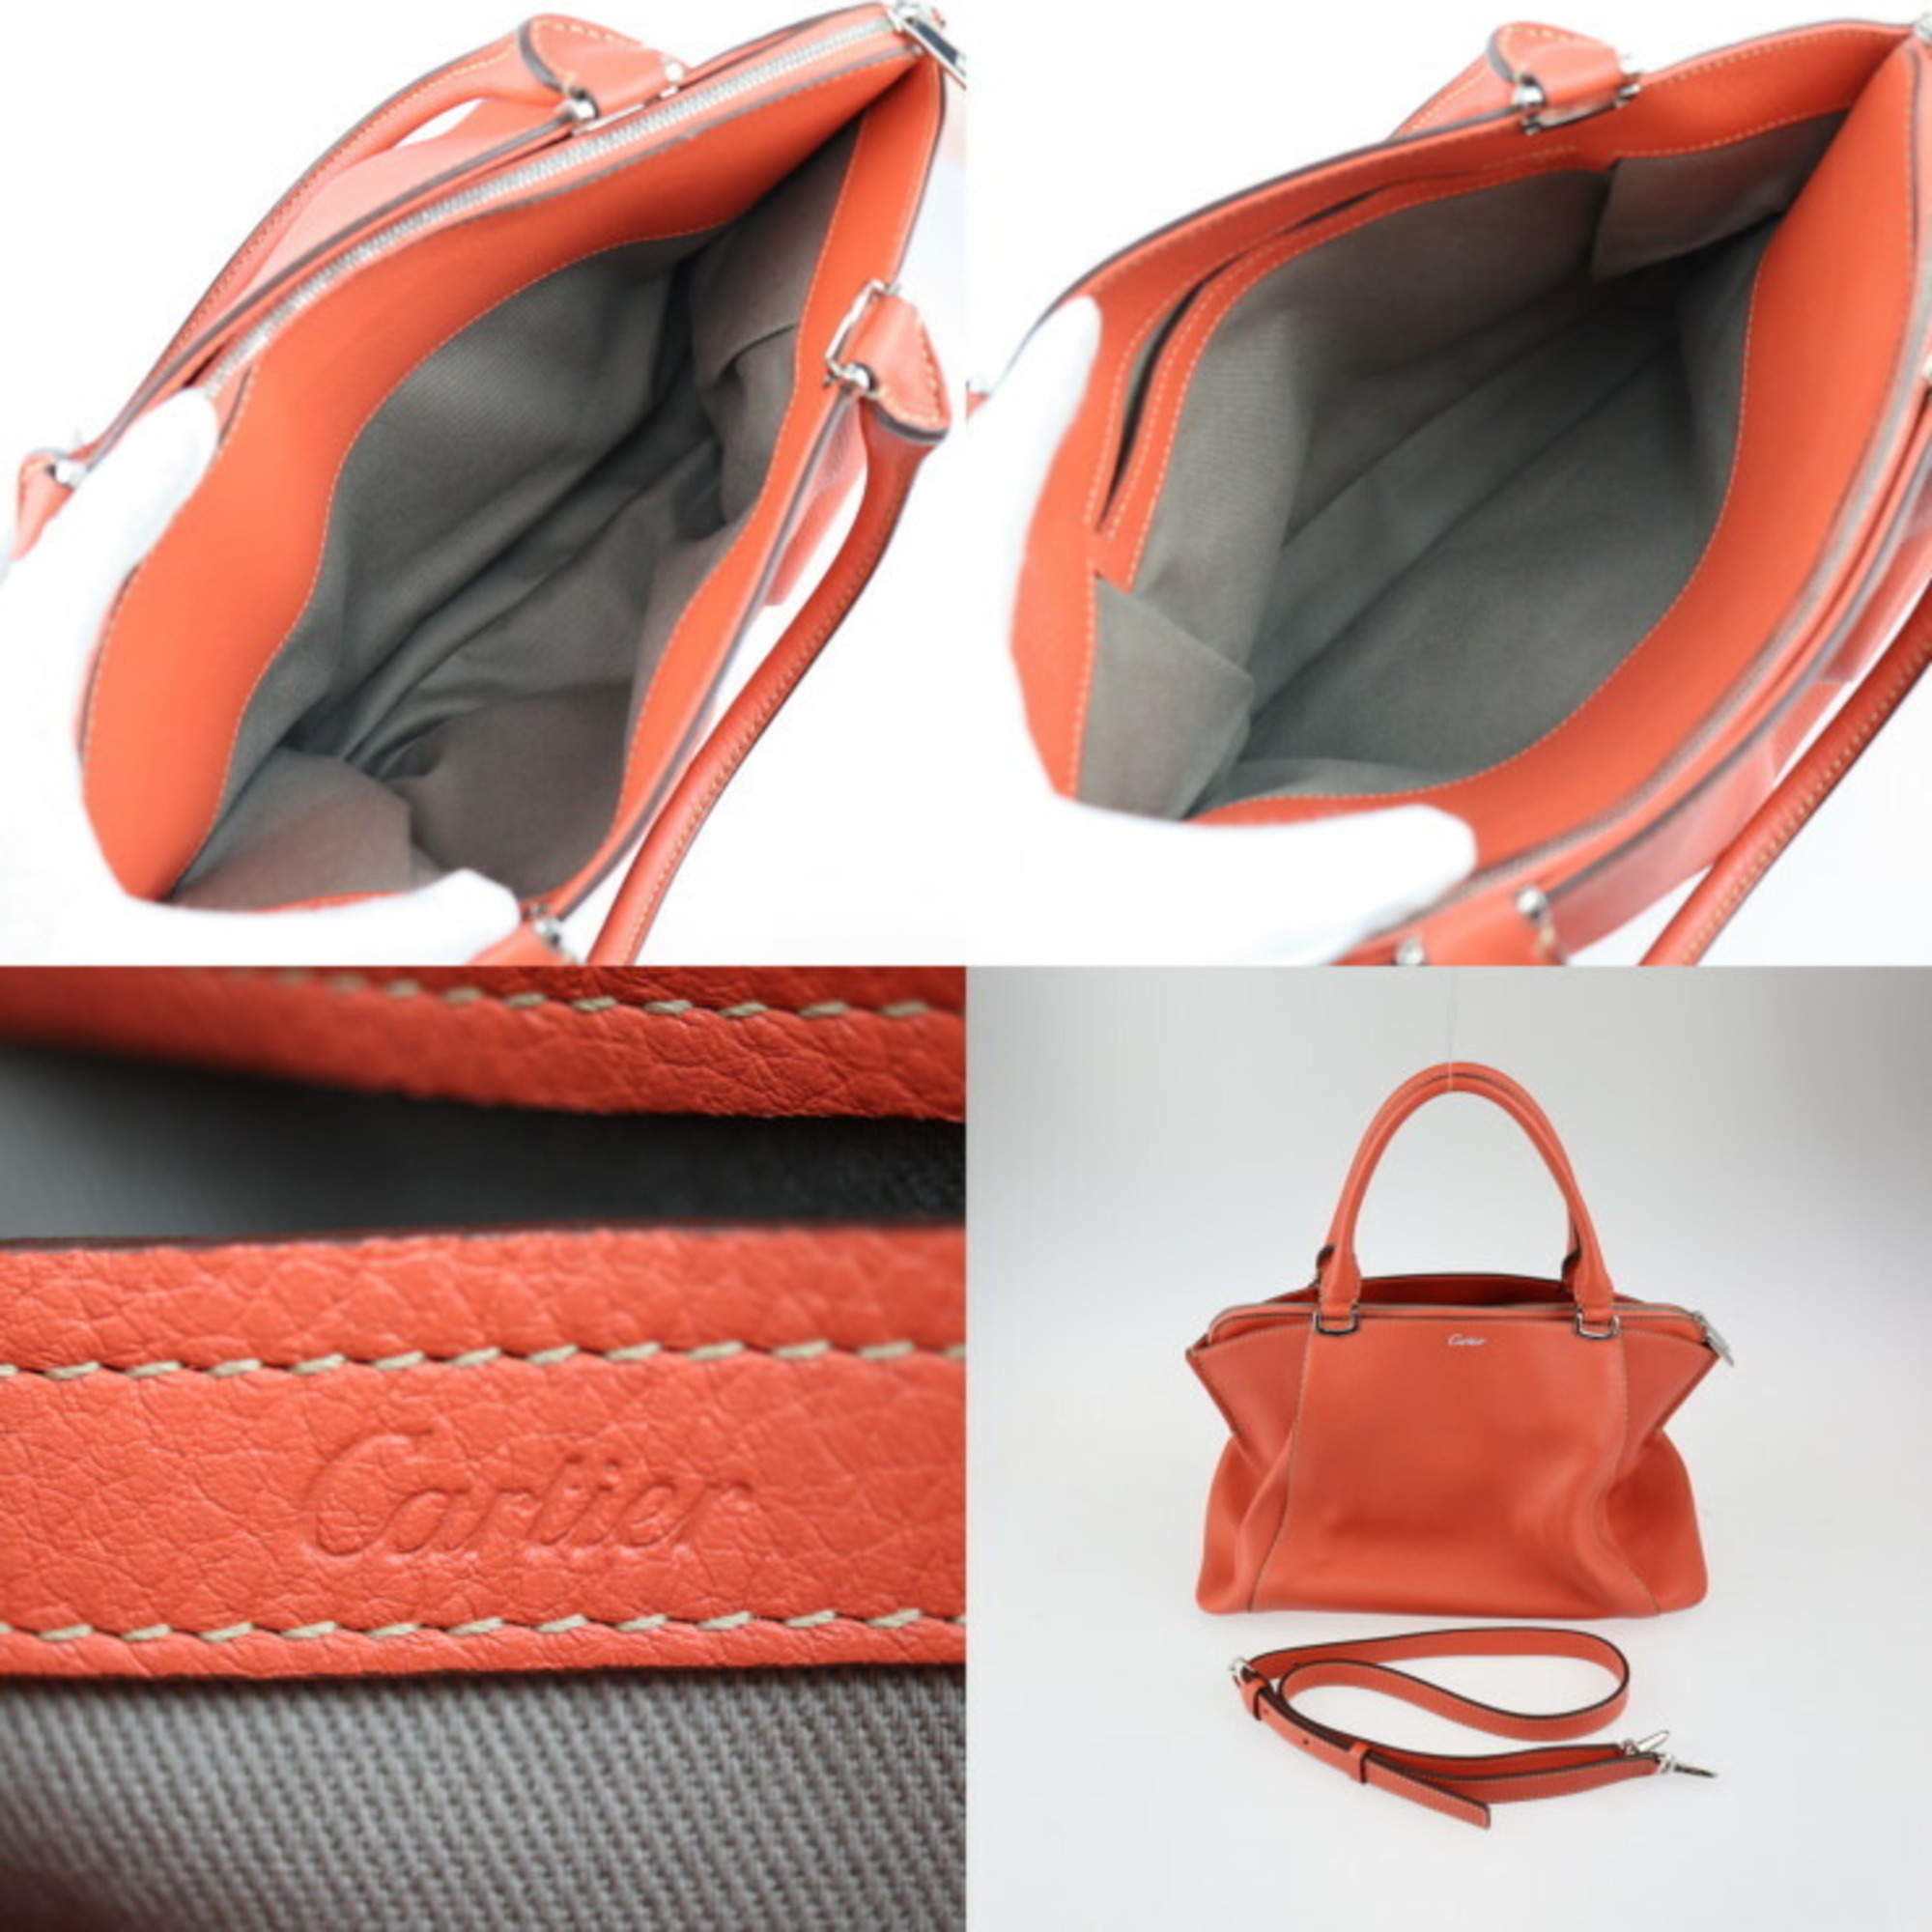 CARTIER C de Cartier SM handbag salmon orange silver metal fittings 2WAY shoulder bag